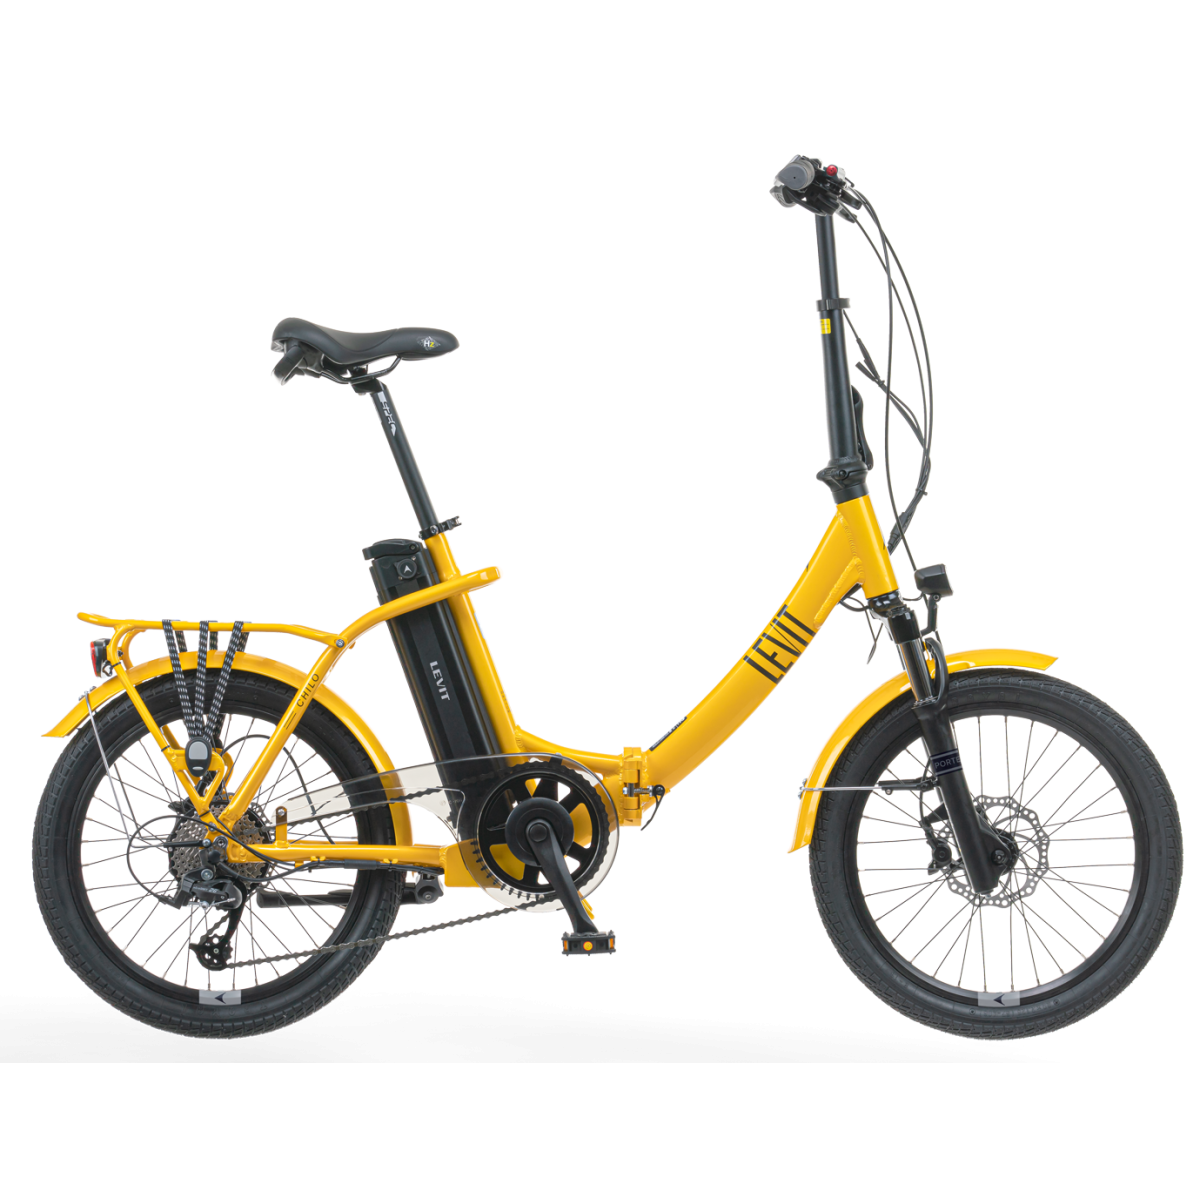 LEVIT eFOLDING CHILO 1 630wh electro folding bicycle - yellow